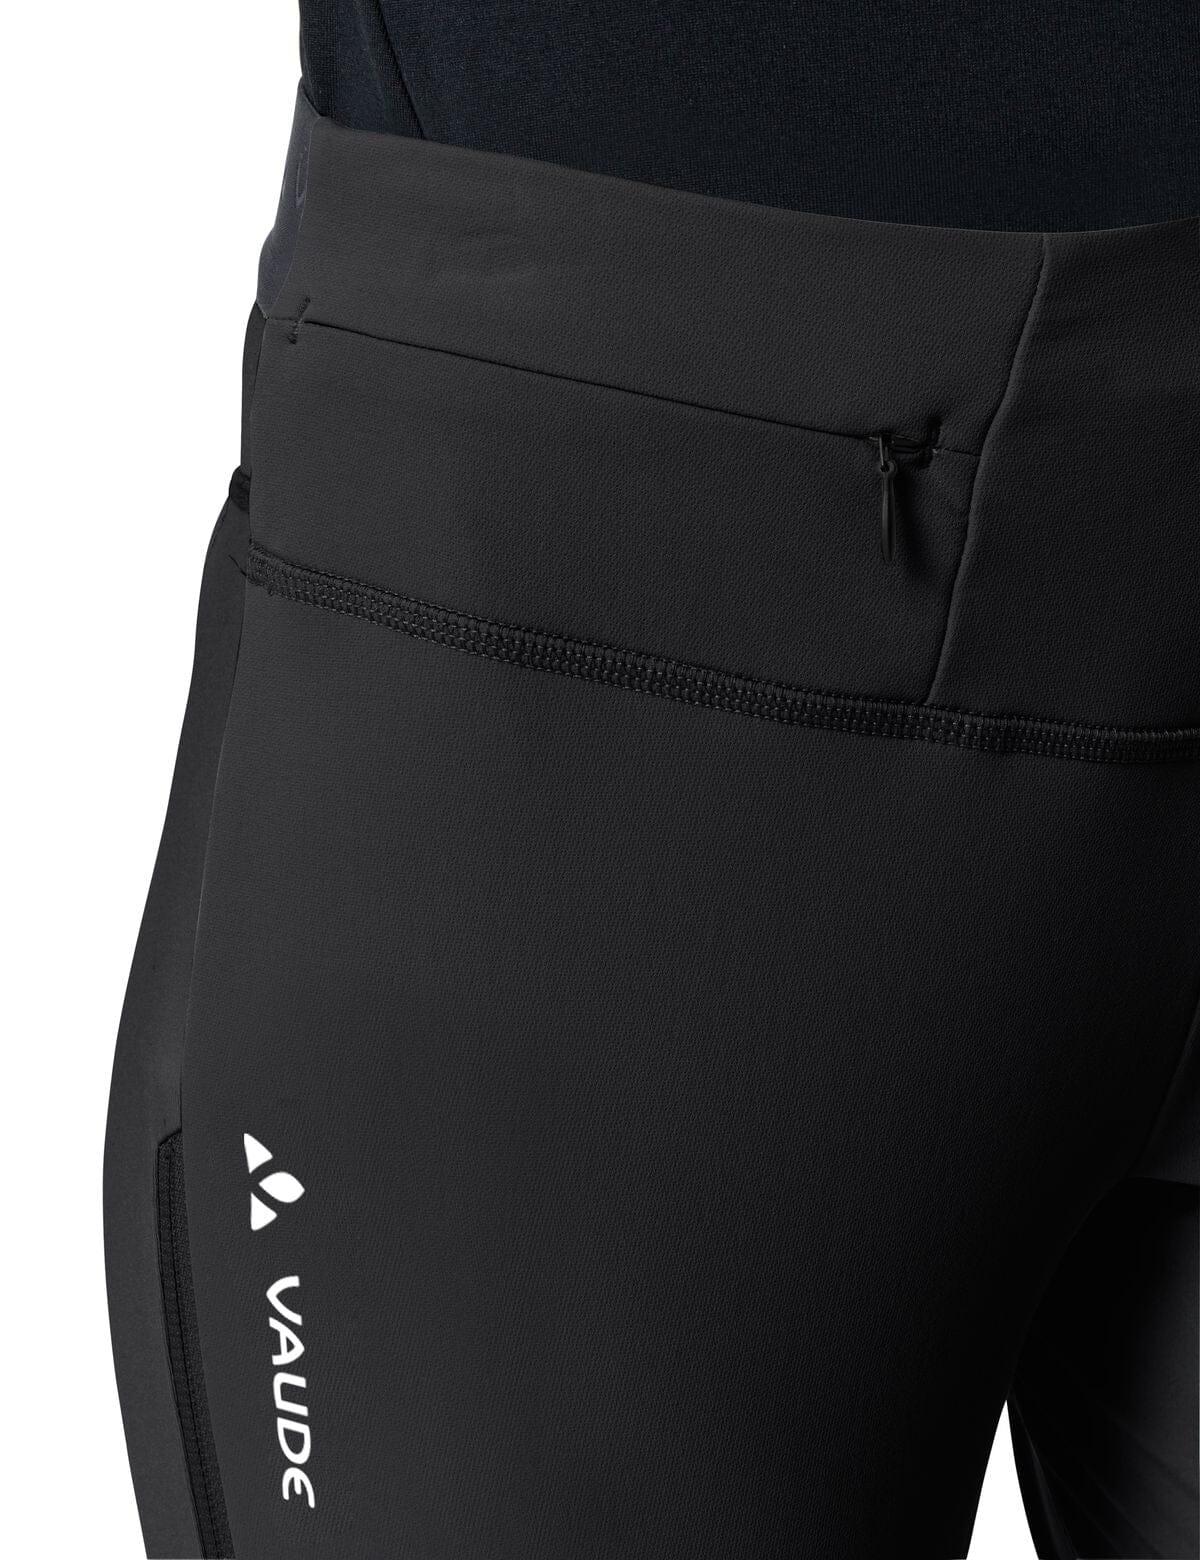 Vaude - W's Larice Light Softshell Pants III - Recycled Polyamide - Weekendbee - sustainable sportswear